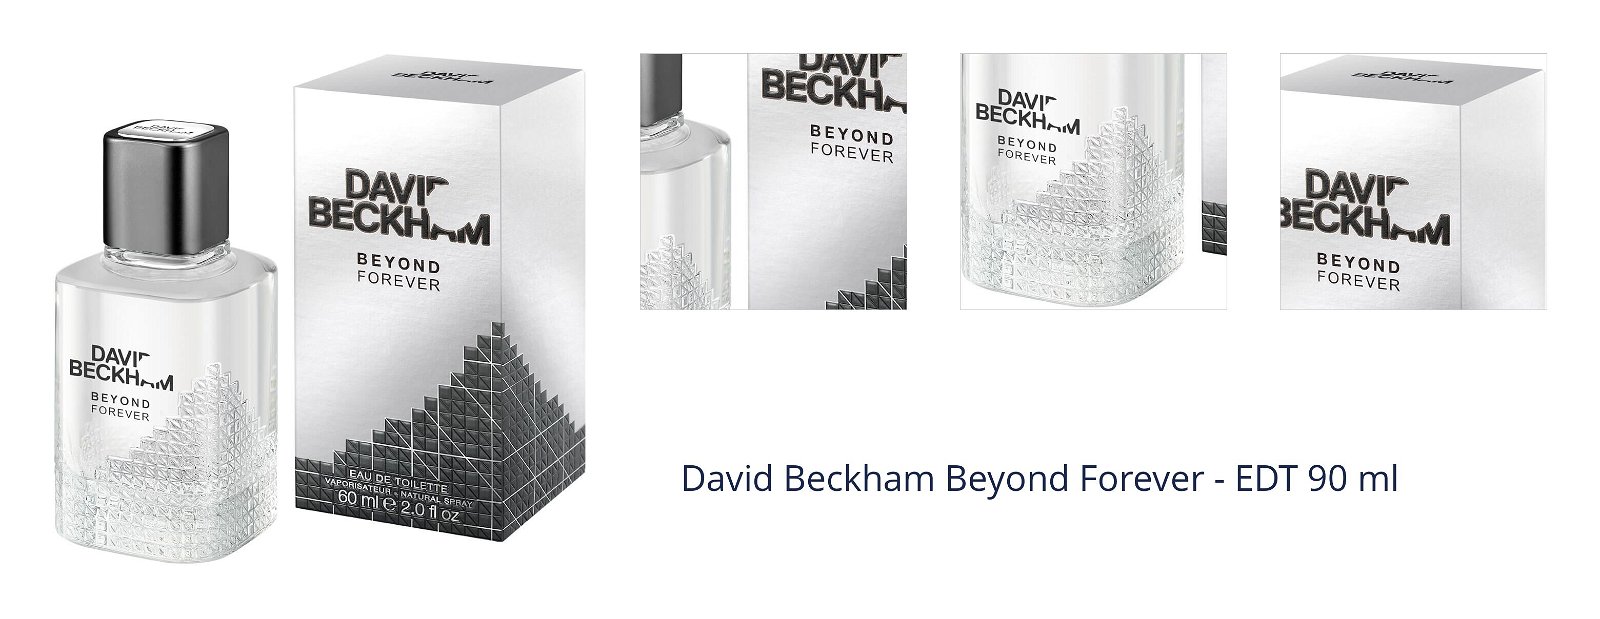 David Beckham Beyond Forever - EDT 90 ml 1